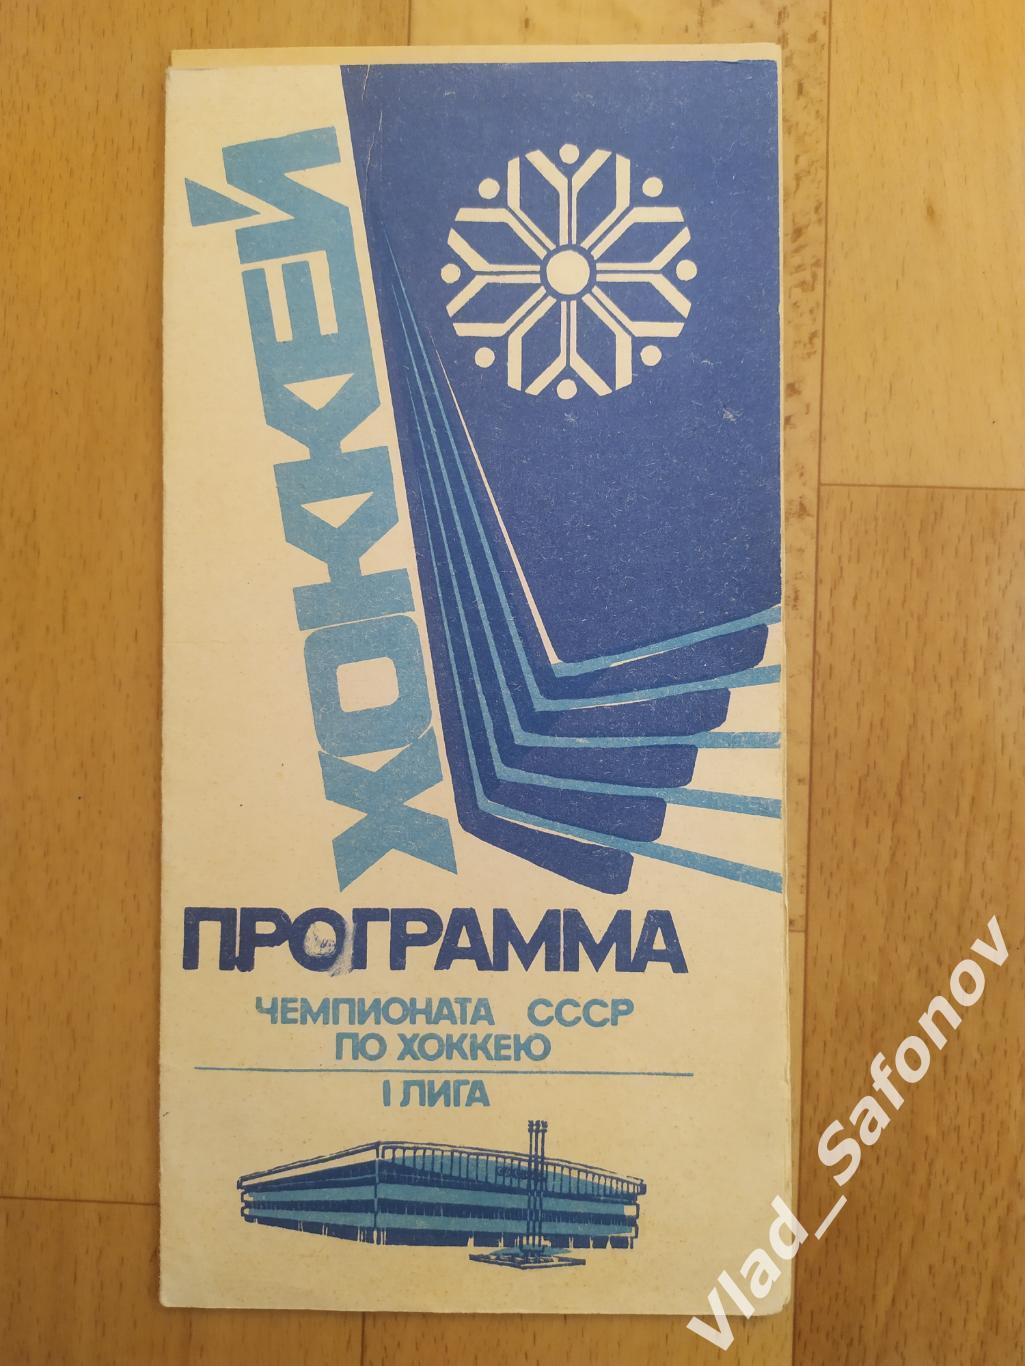 Сибирь(Новосибирск) - Ска(Хабаровск). 1 лига. 24-25/09/1991